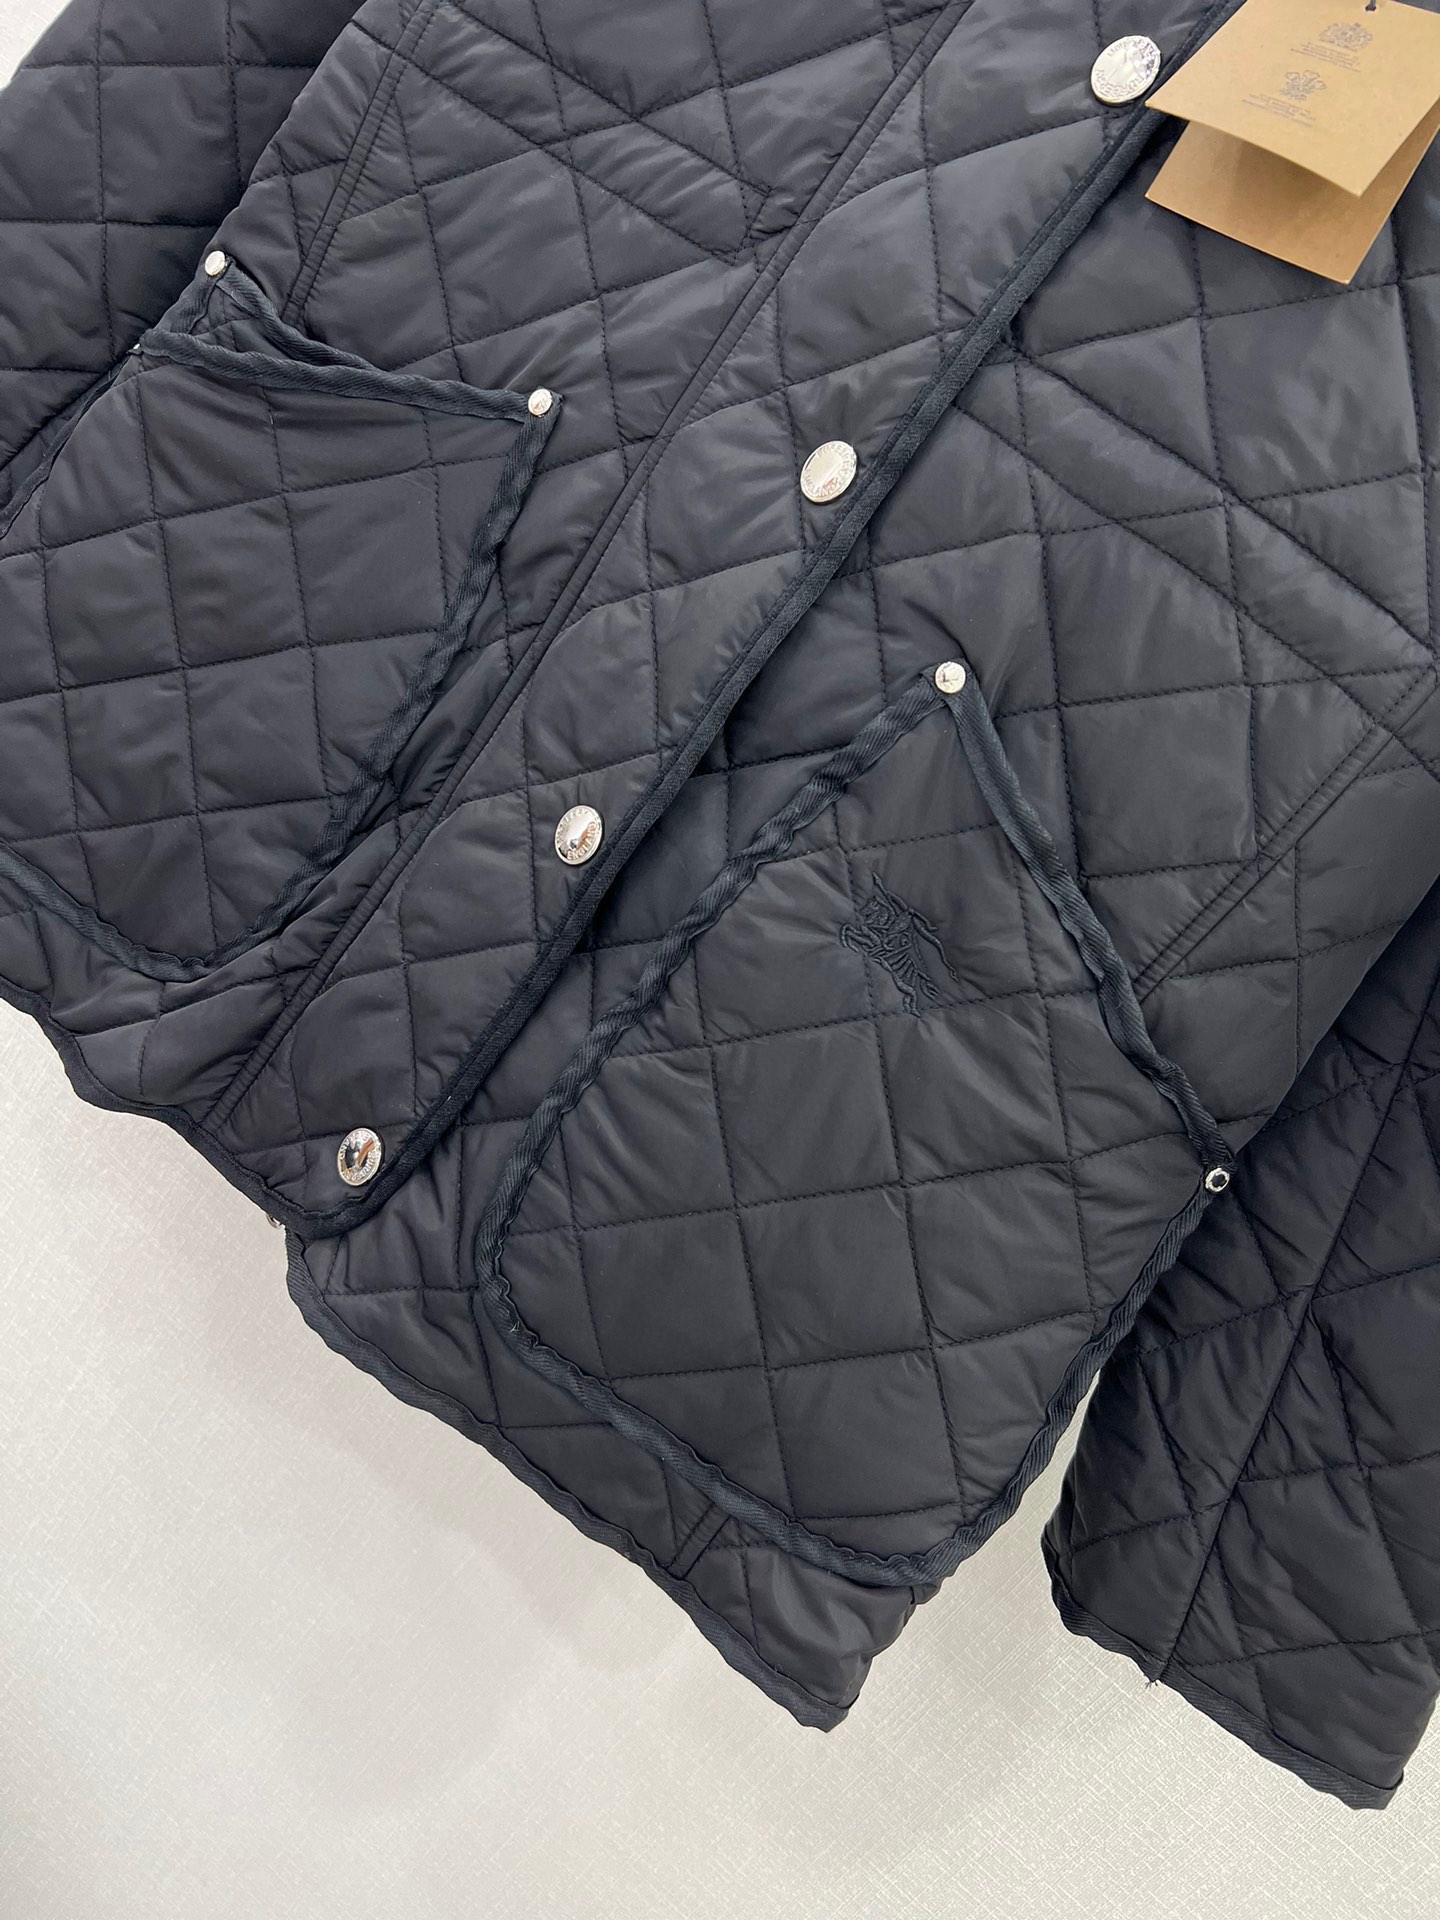 [新季度]バーバリー ジャケット メンズコピー アウター 中綿 コート フード付き 暖かい 大人気 ブラック_5